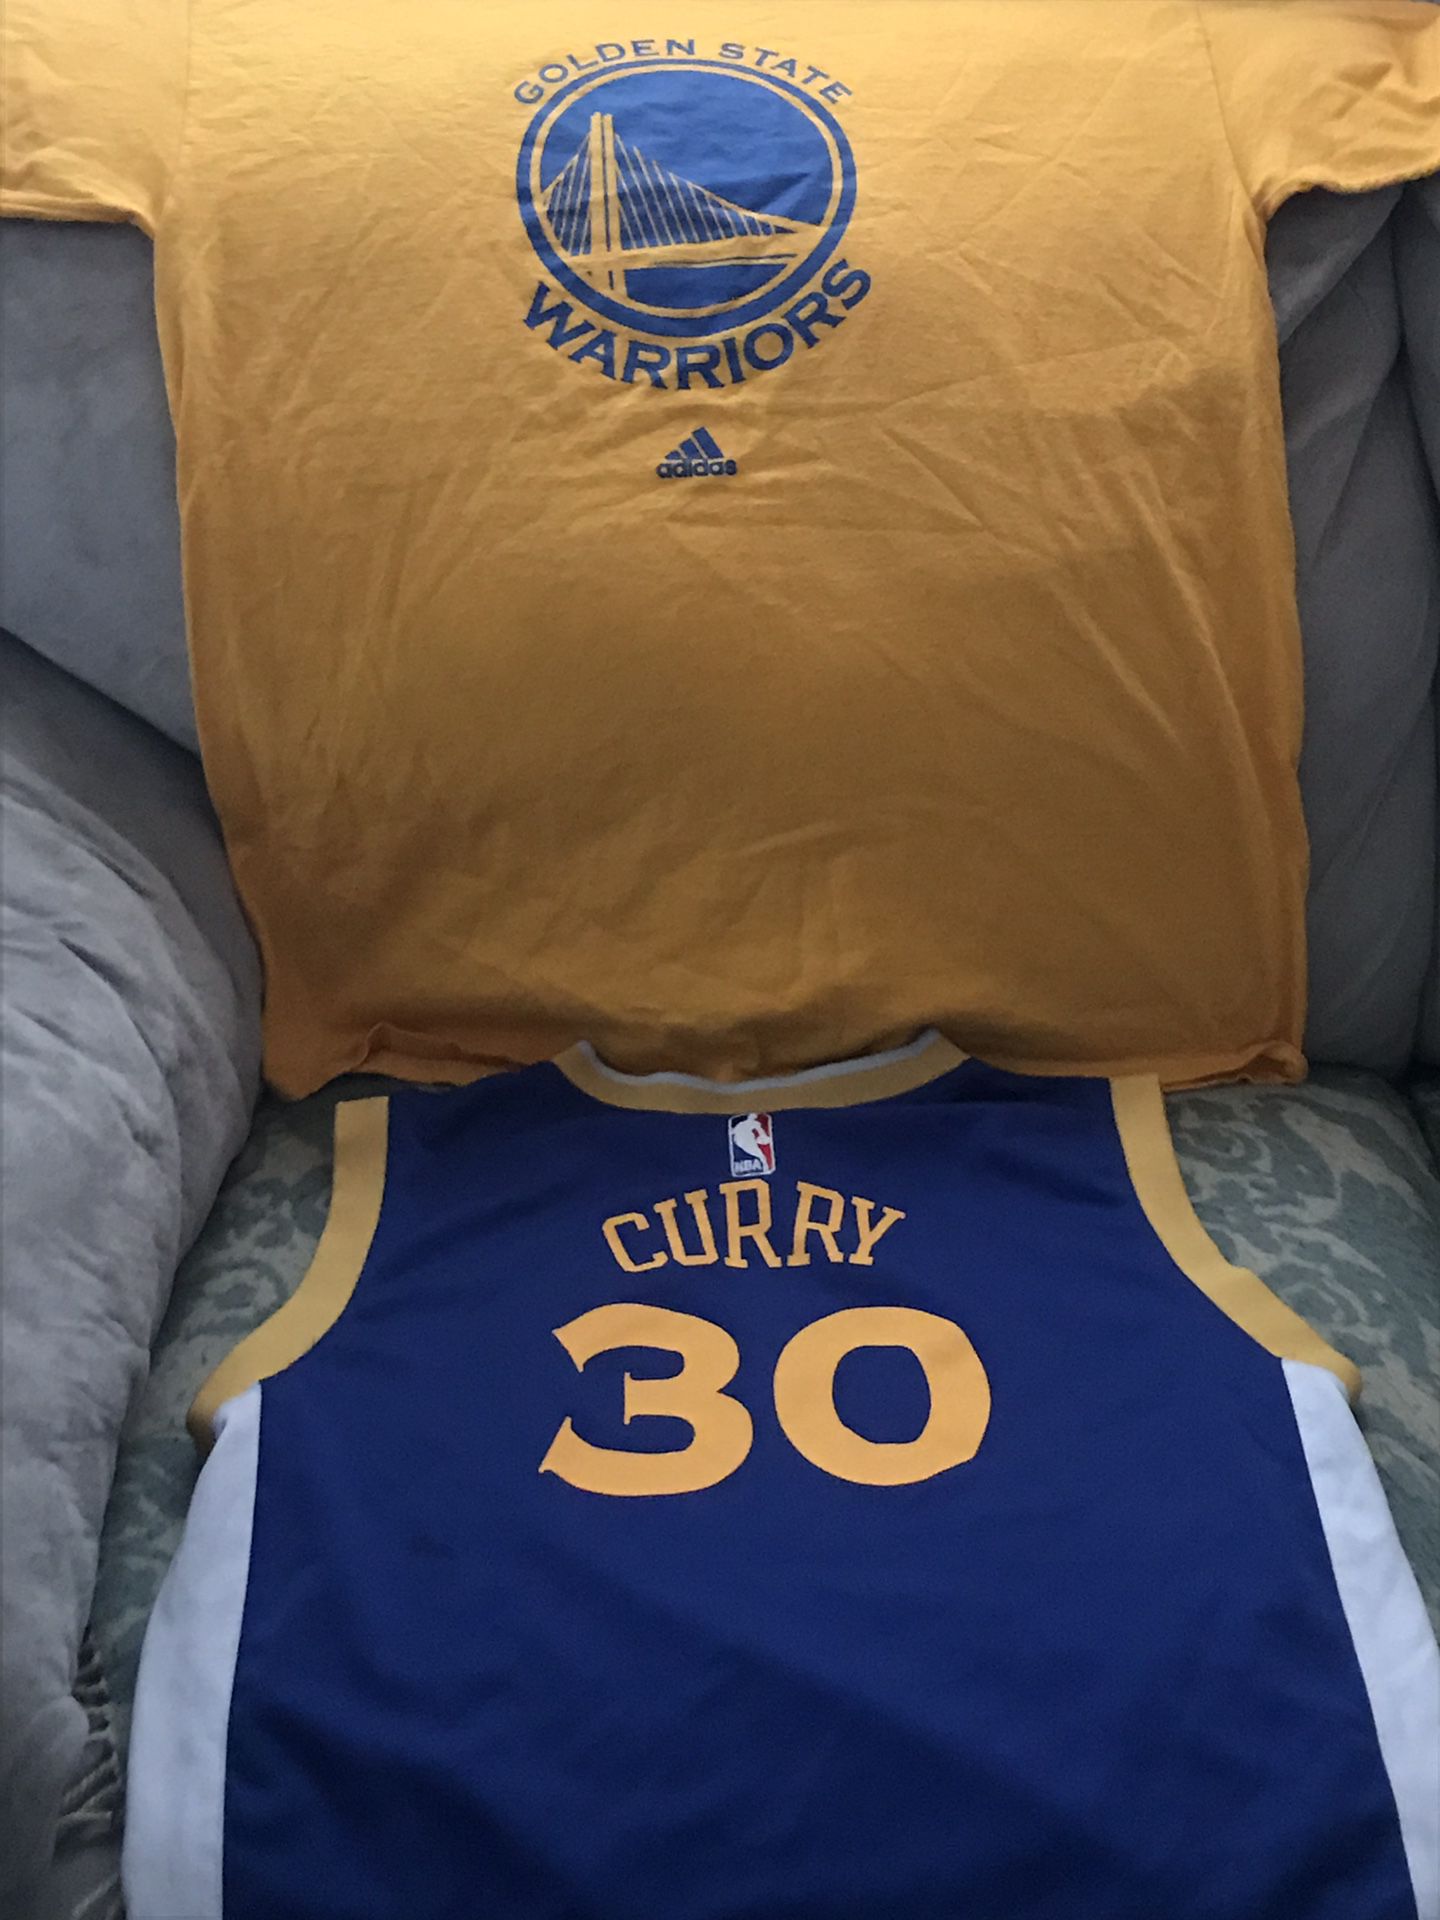 Golden State Warriors Jersey & Shirt